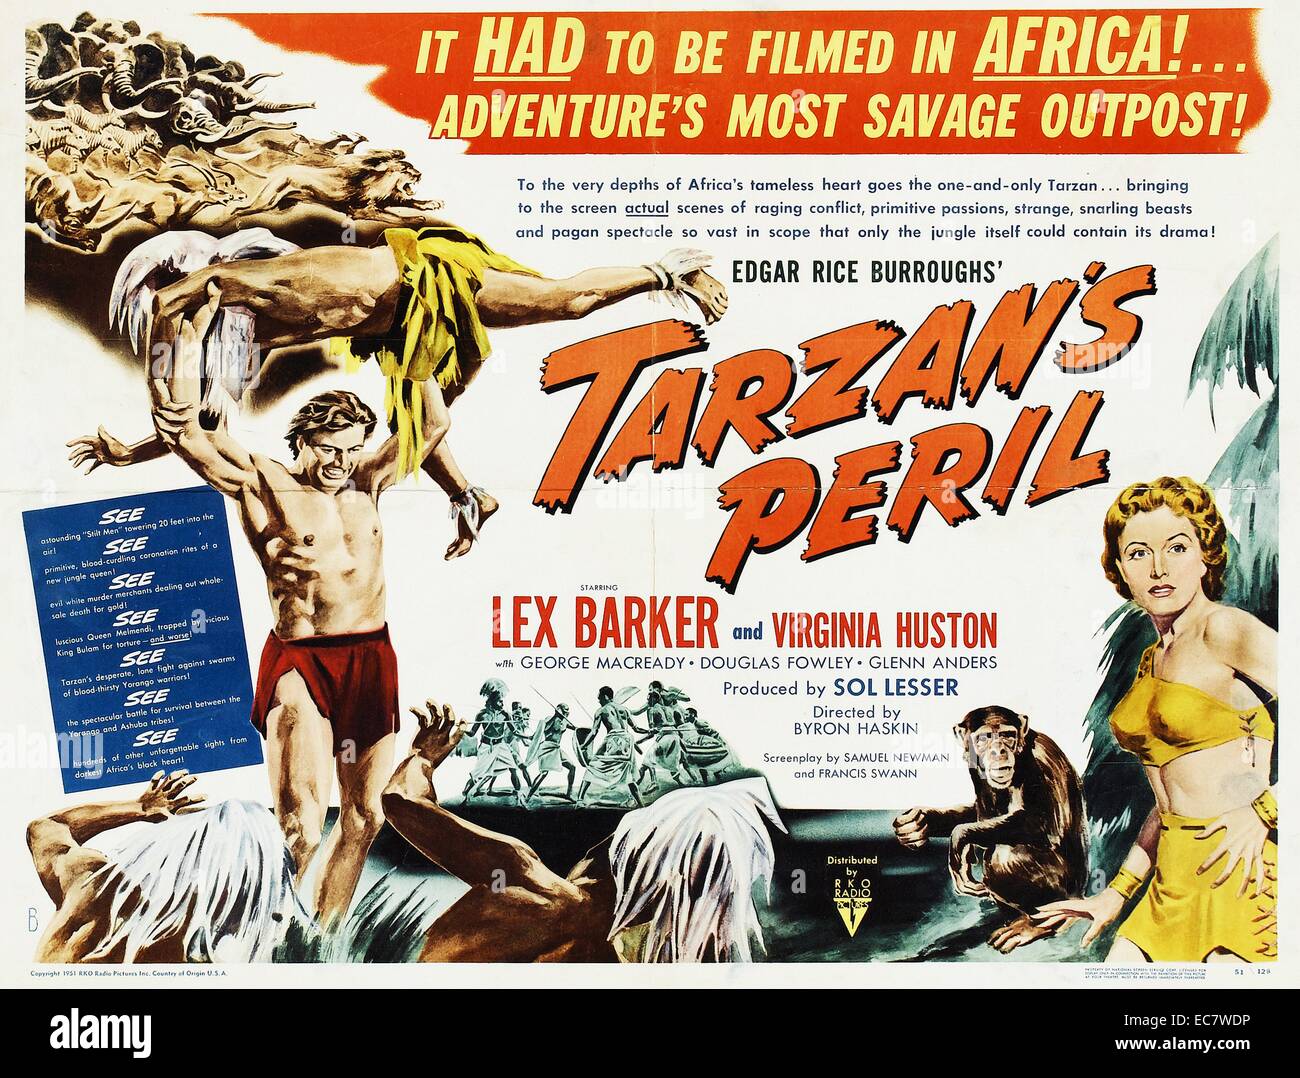 Tarzan und die Gefahr ist ein 1951 Film unter der Regie von Byron Haskin und Lex Barker in den Hauptrollen und Virginia Huston und mit Dorothy Dandridge. Es wurde in Kenia erschossen und ist damit die erste Tarzan Film in Afrika gedreht werden, obwohl die meisten seiner Aufnahmen in den Vereinigten Staaten getan wurde. Kritik lobte die überzeugende Integration der afrikanischen und amerikanischen Filmmaterial. Stockfoto